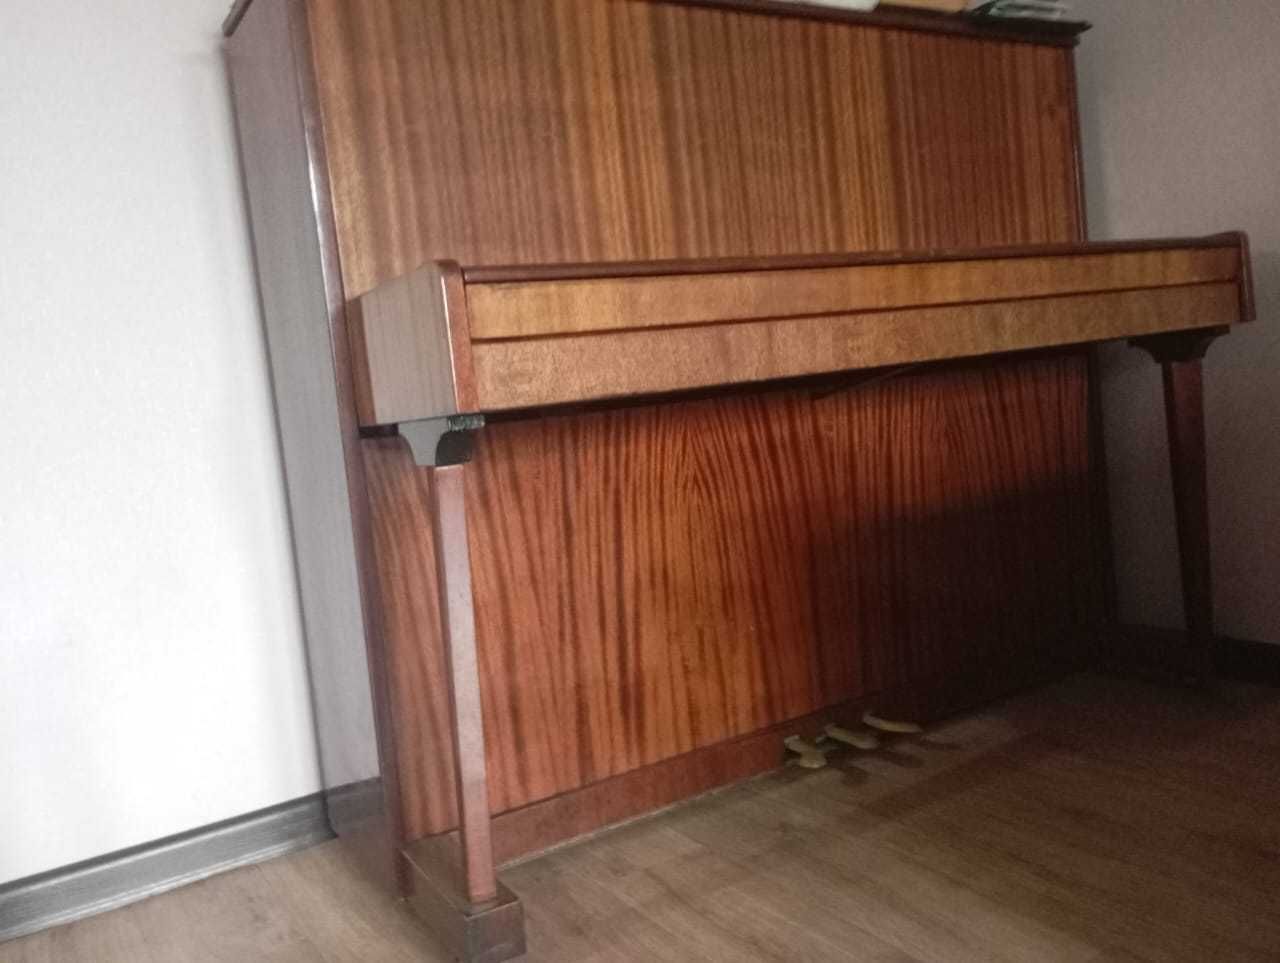 Продам пианино в хорошем состоянии